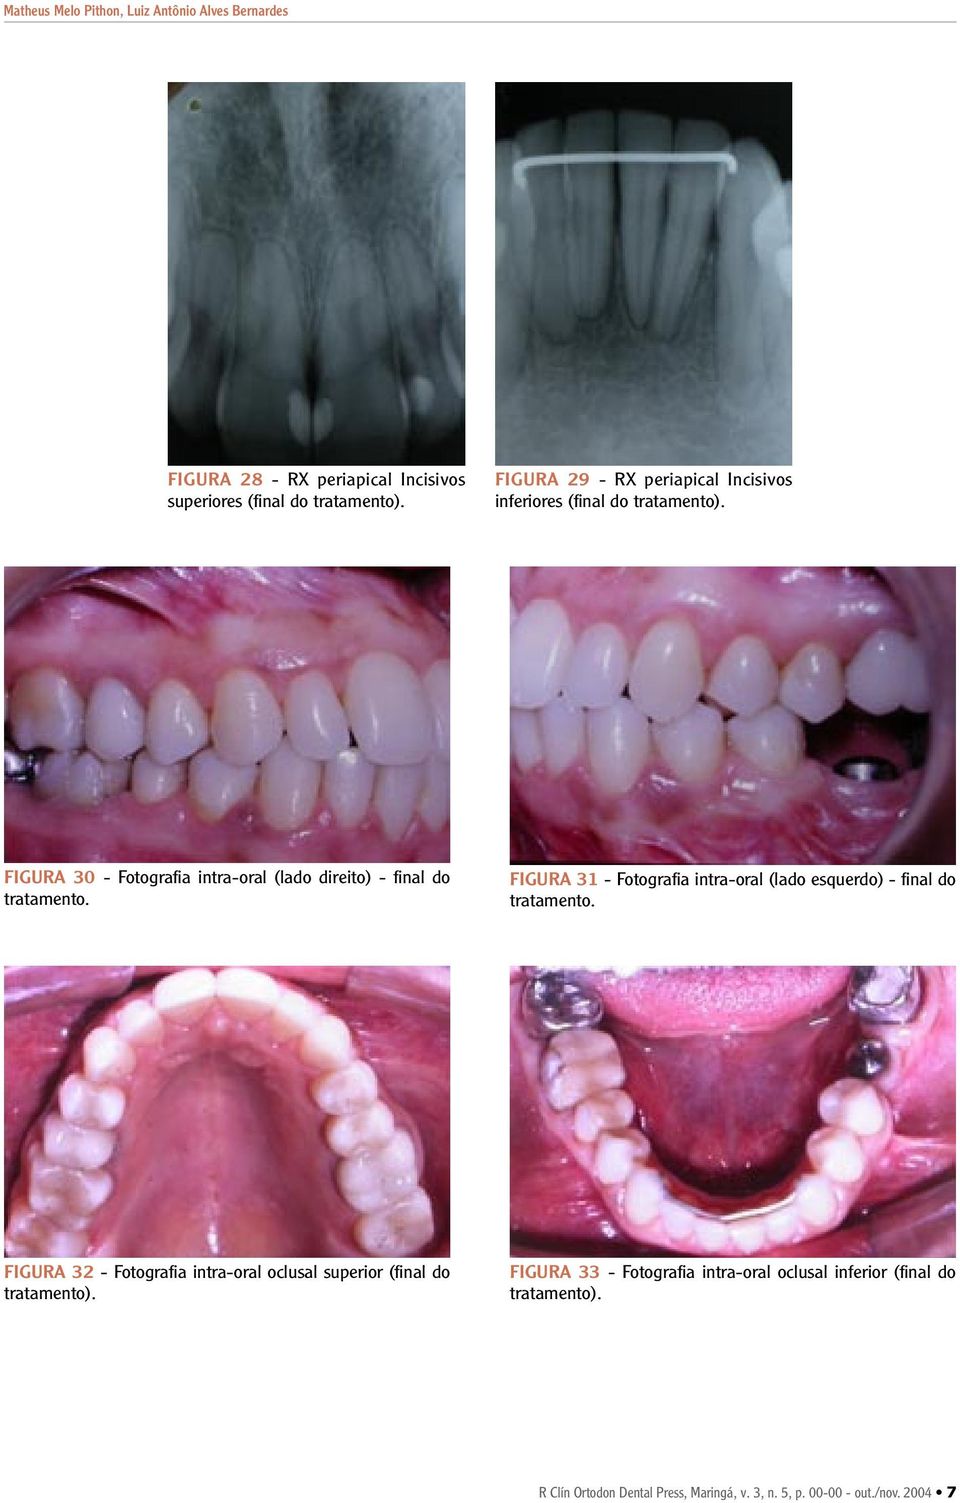 FIGURA 30 - Fotografia intra-oral (lado direito) - final do tratamento.